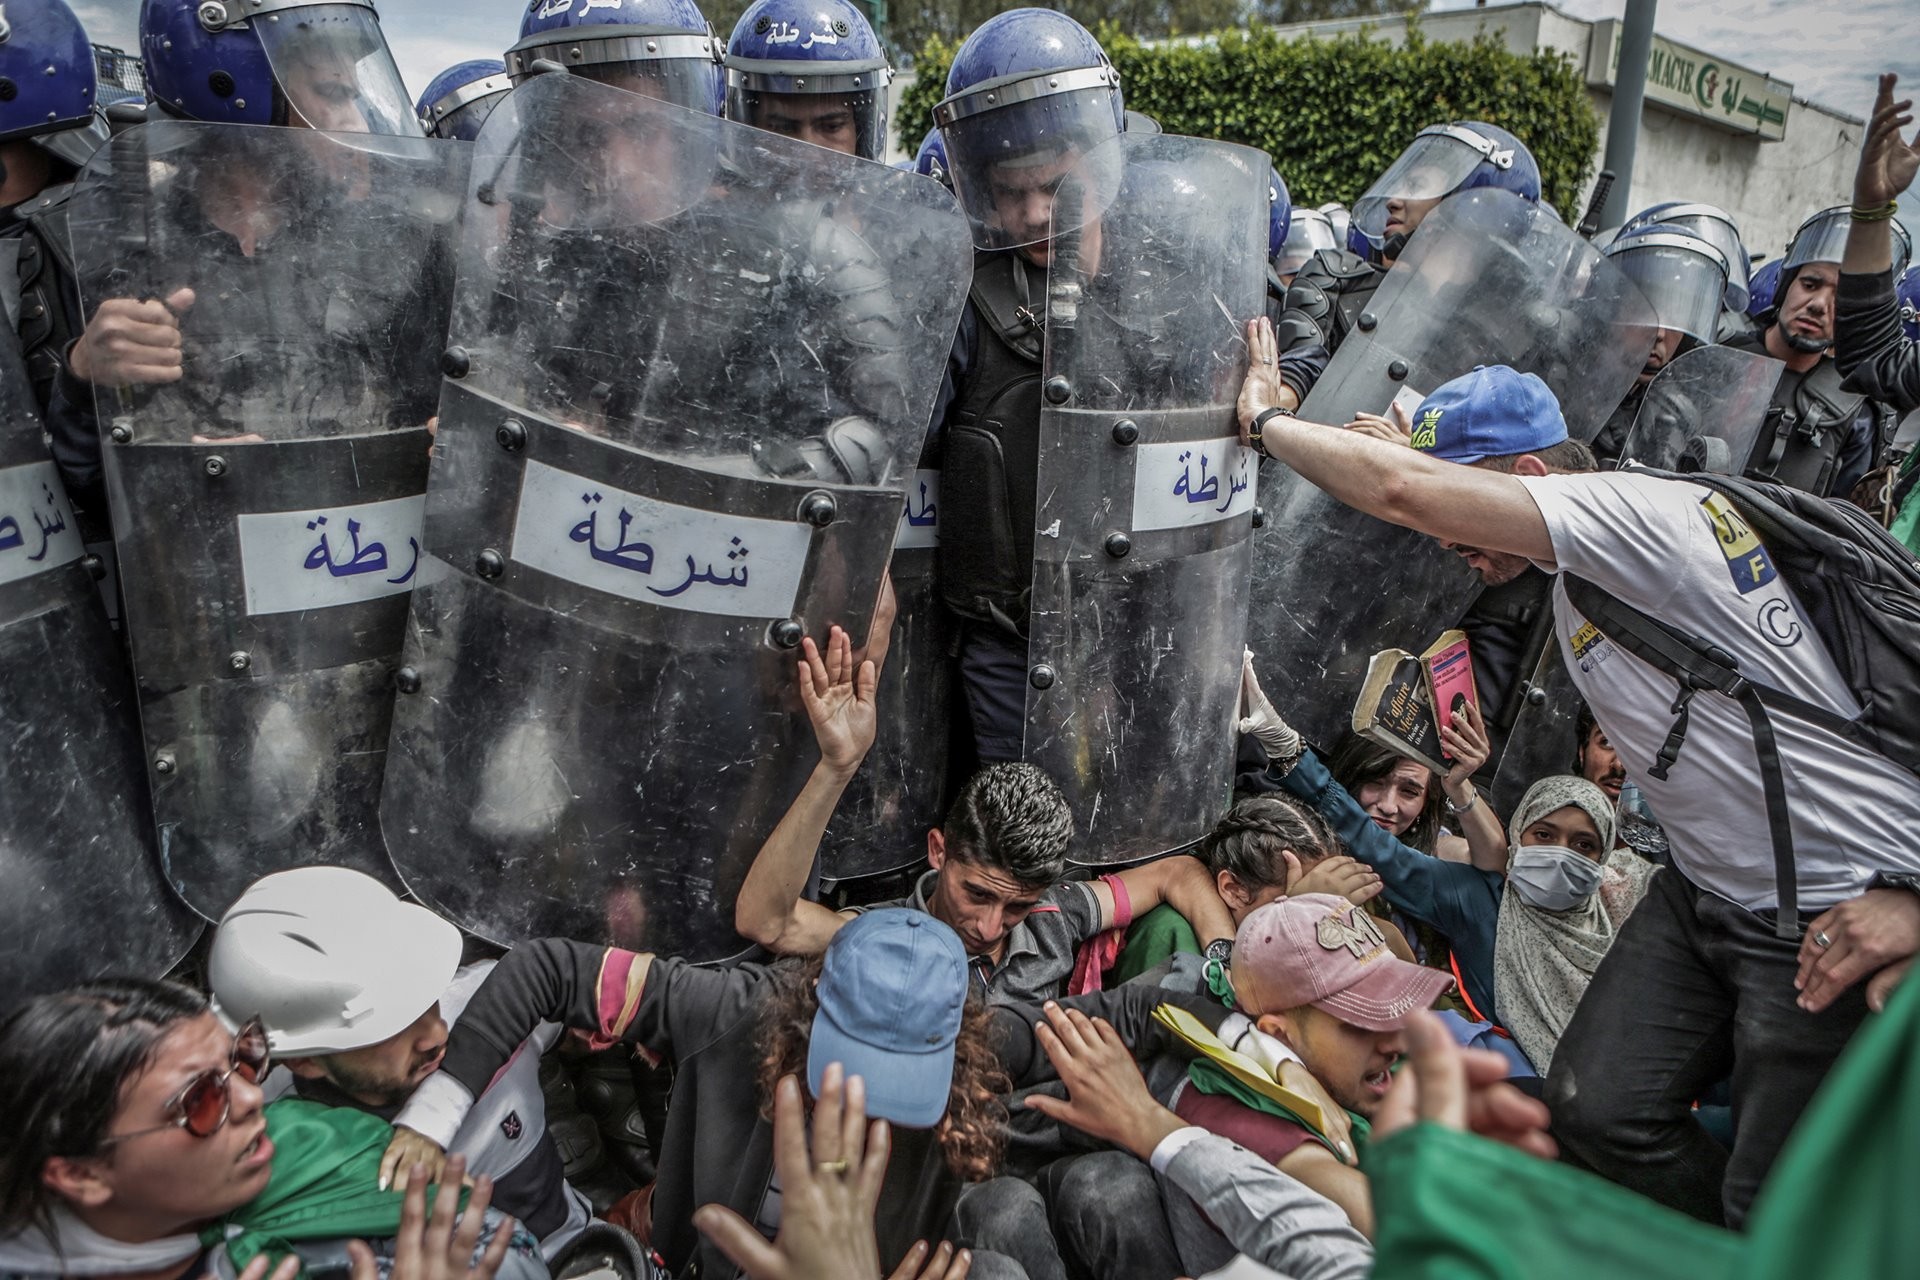 1 место в категории Срочные новости, 2020. Студенты и полиция во время антиправительственной демонстрации в Алжире, 21 мая 2019 года. Автор Фарук Батич